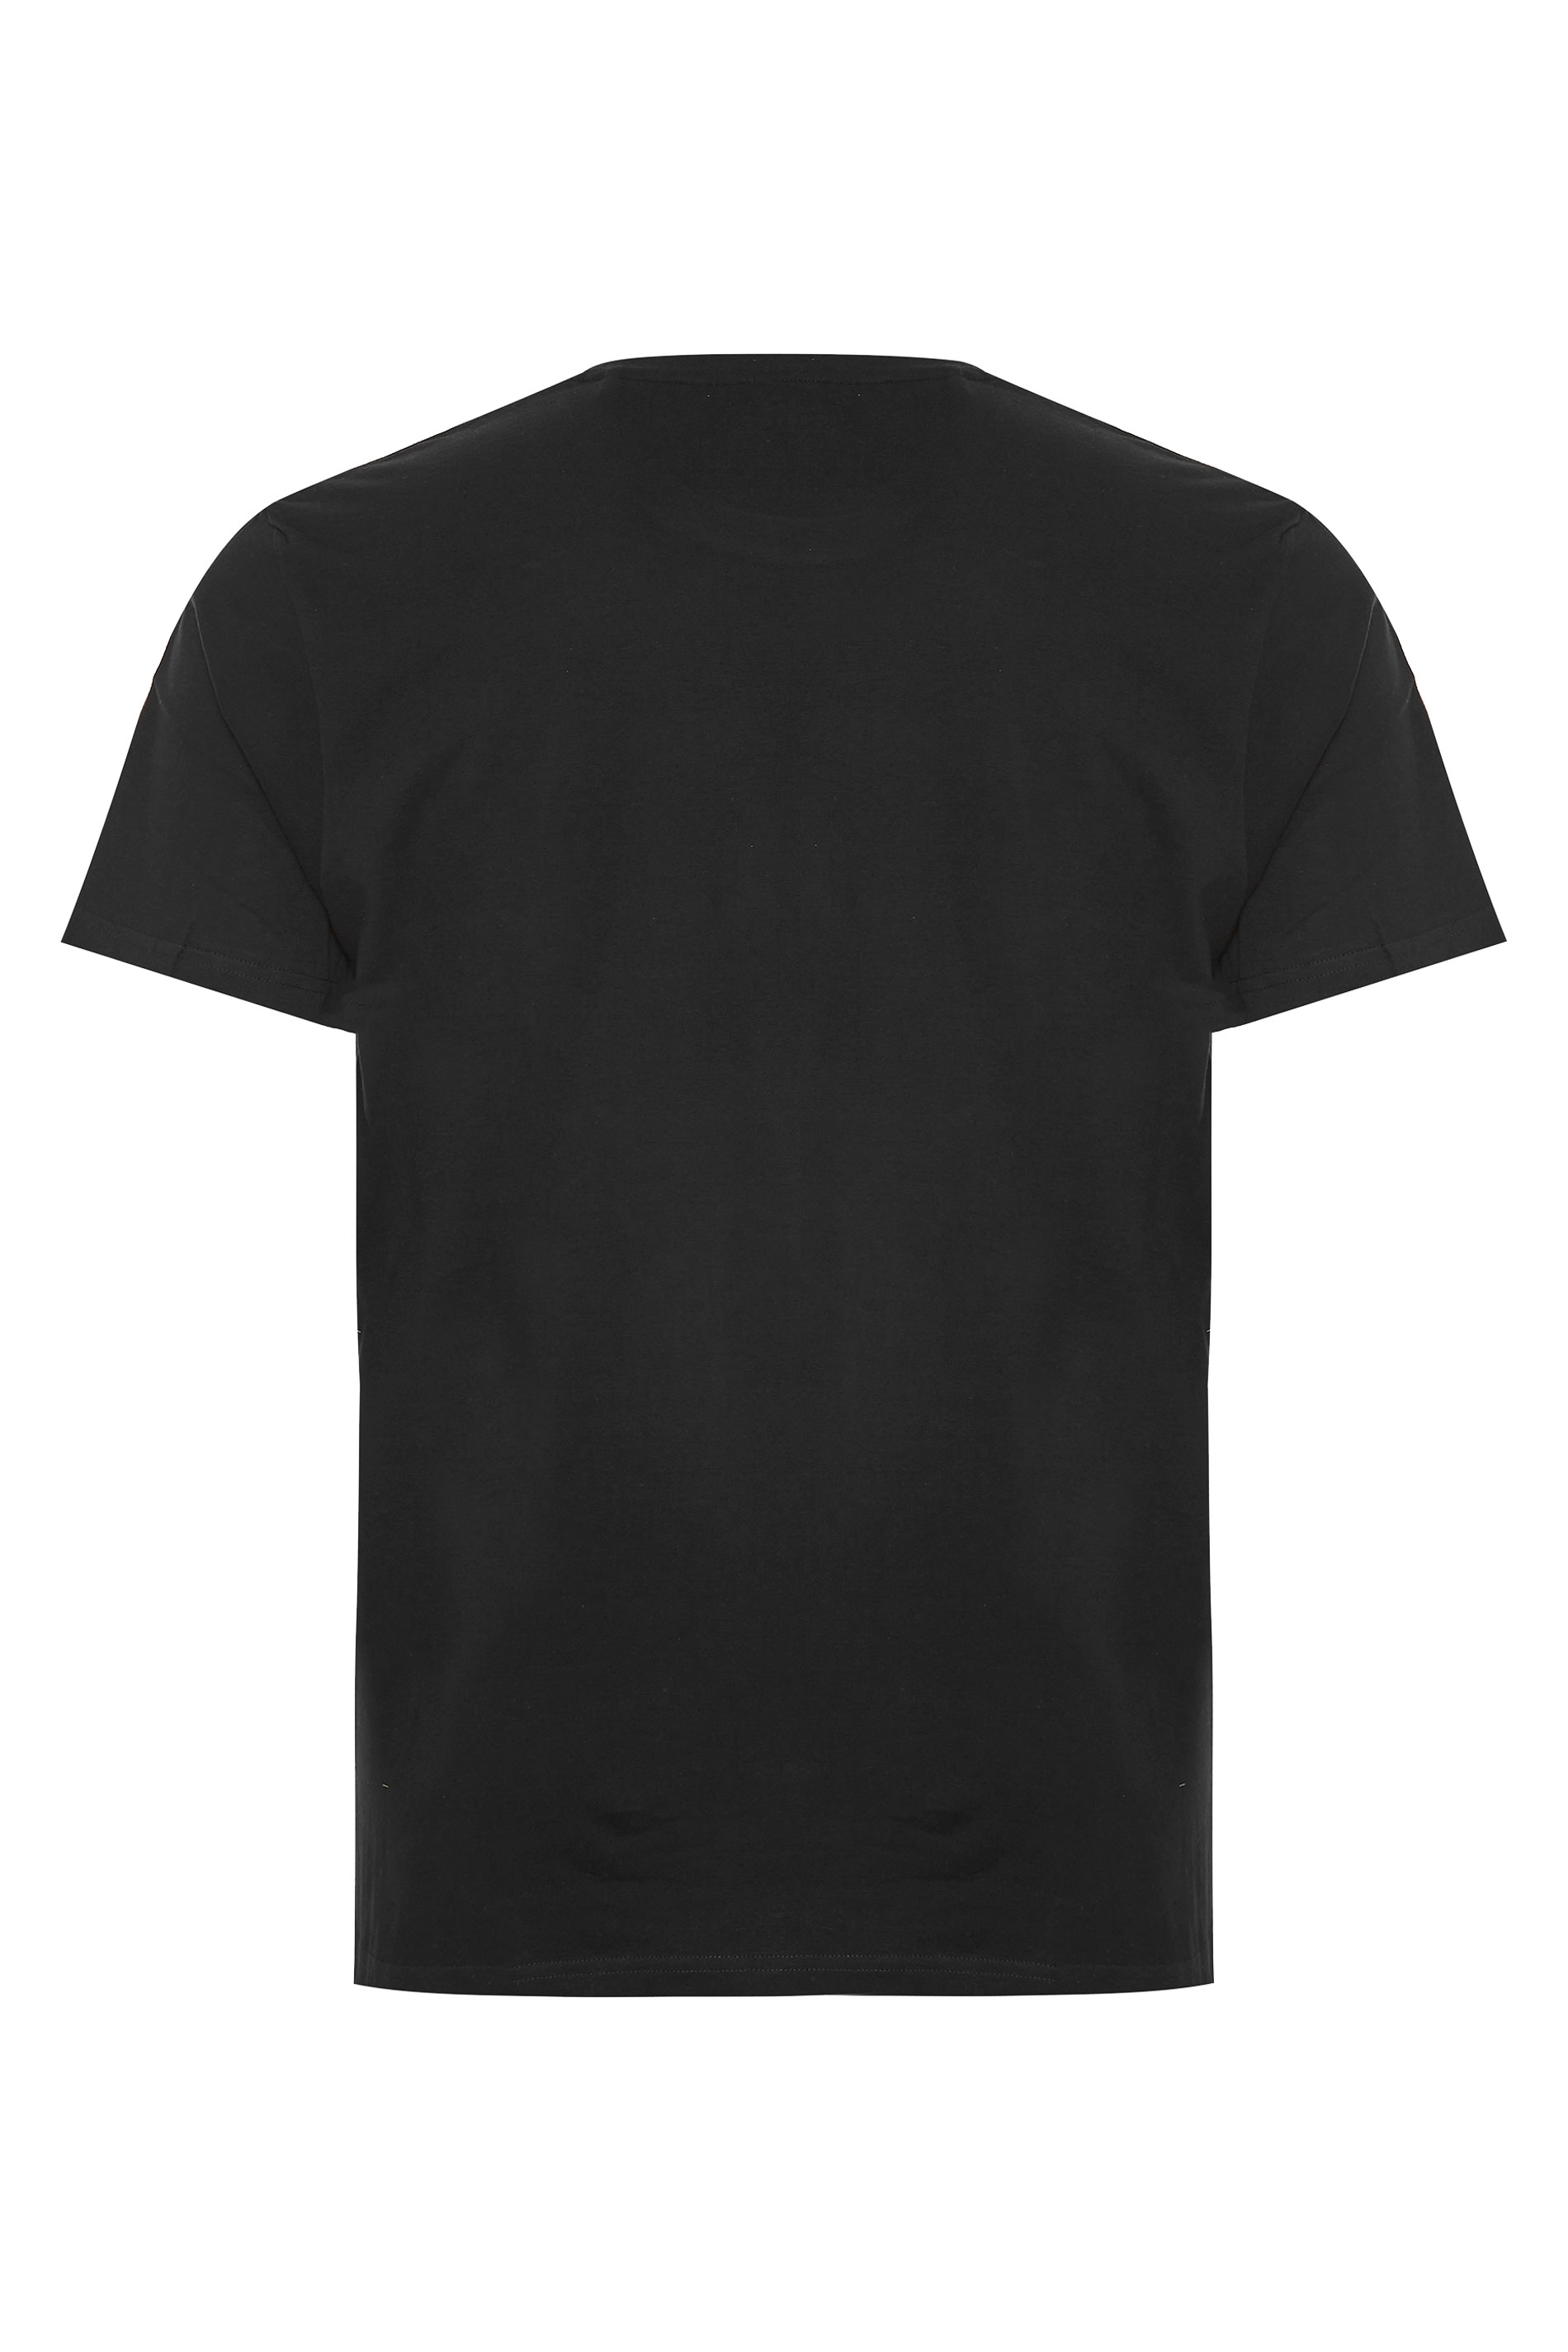 BADRHINO Black Basic Plain T-Shirt ...